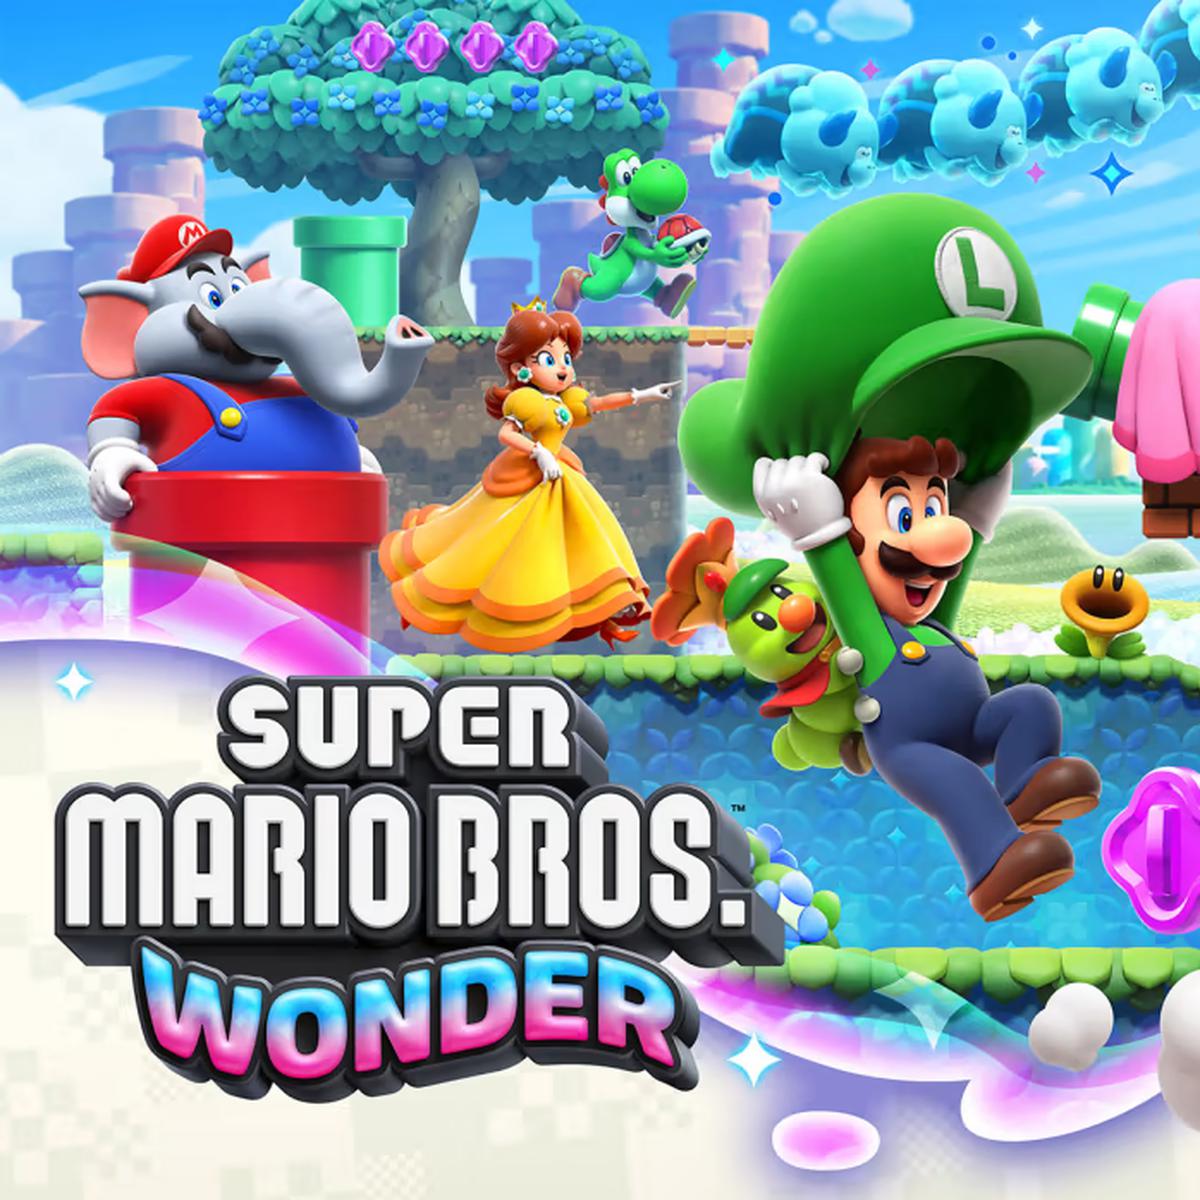 Cómo funciona el multijugador de Super Mario Bros Wonder online y local